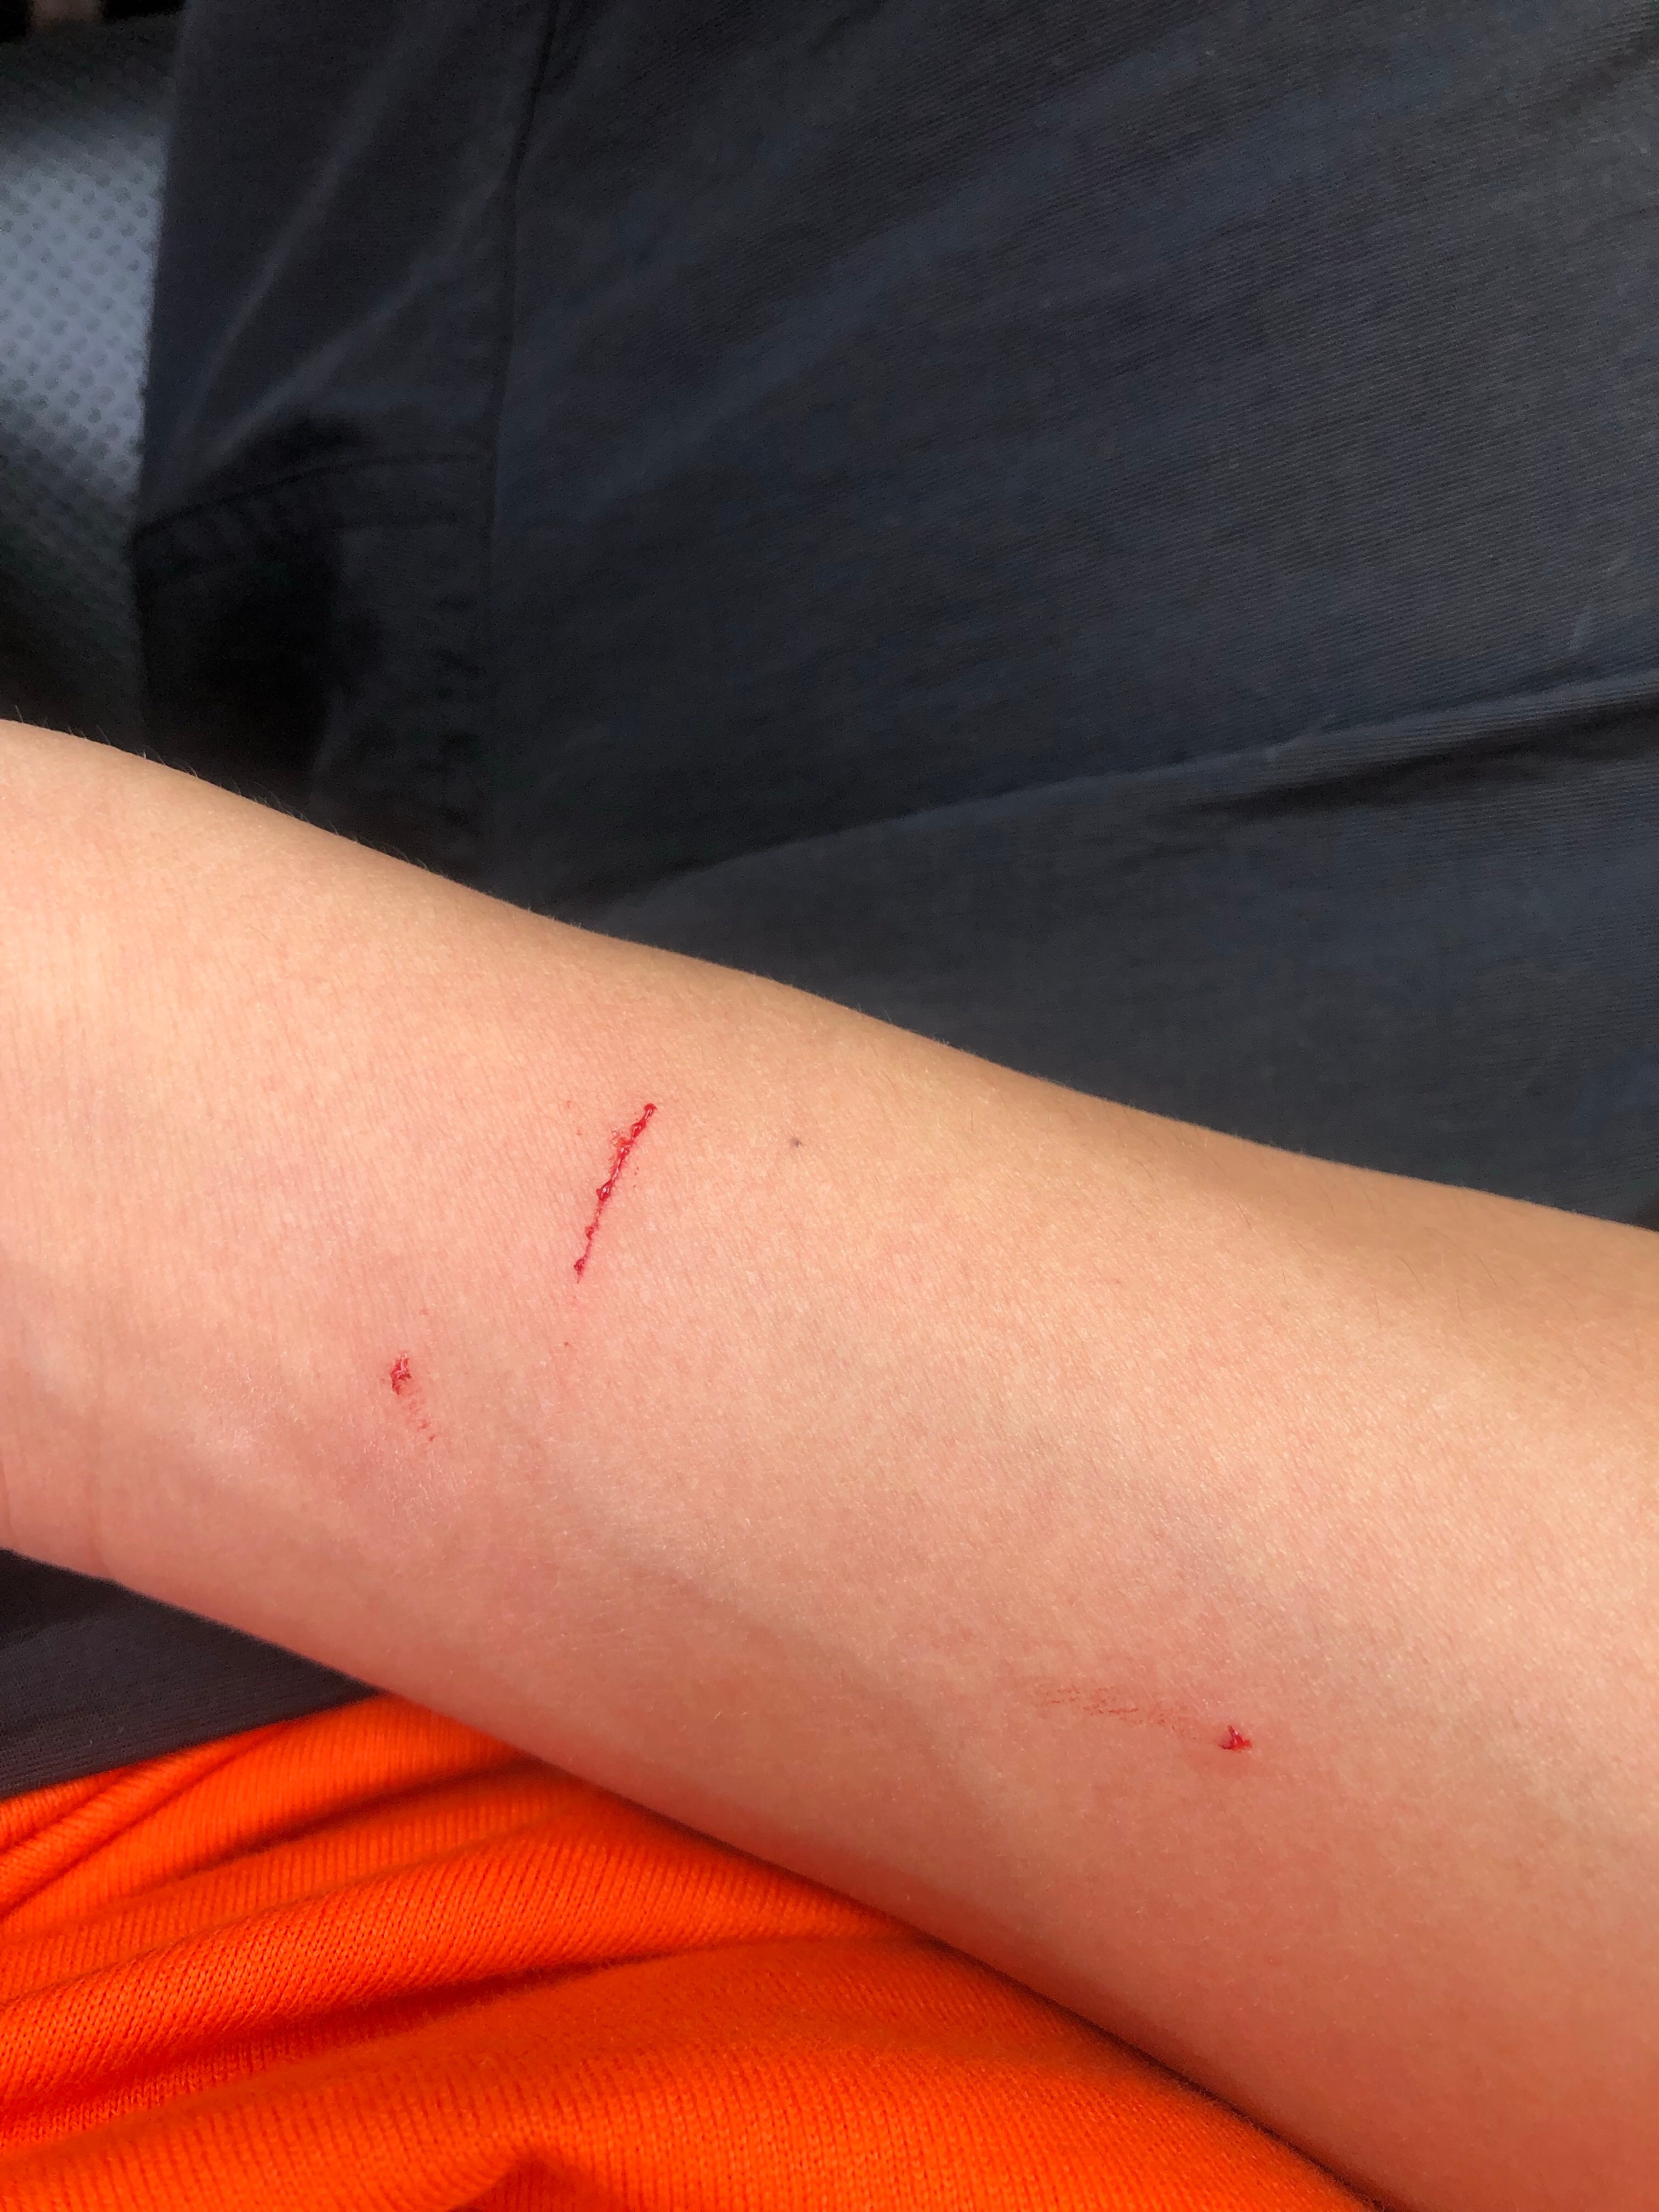 在线问:被家里的猫爪伤,用不用去医院打针